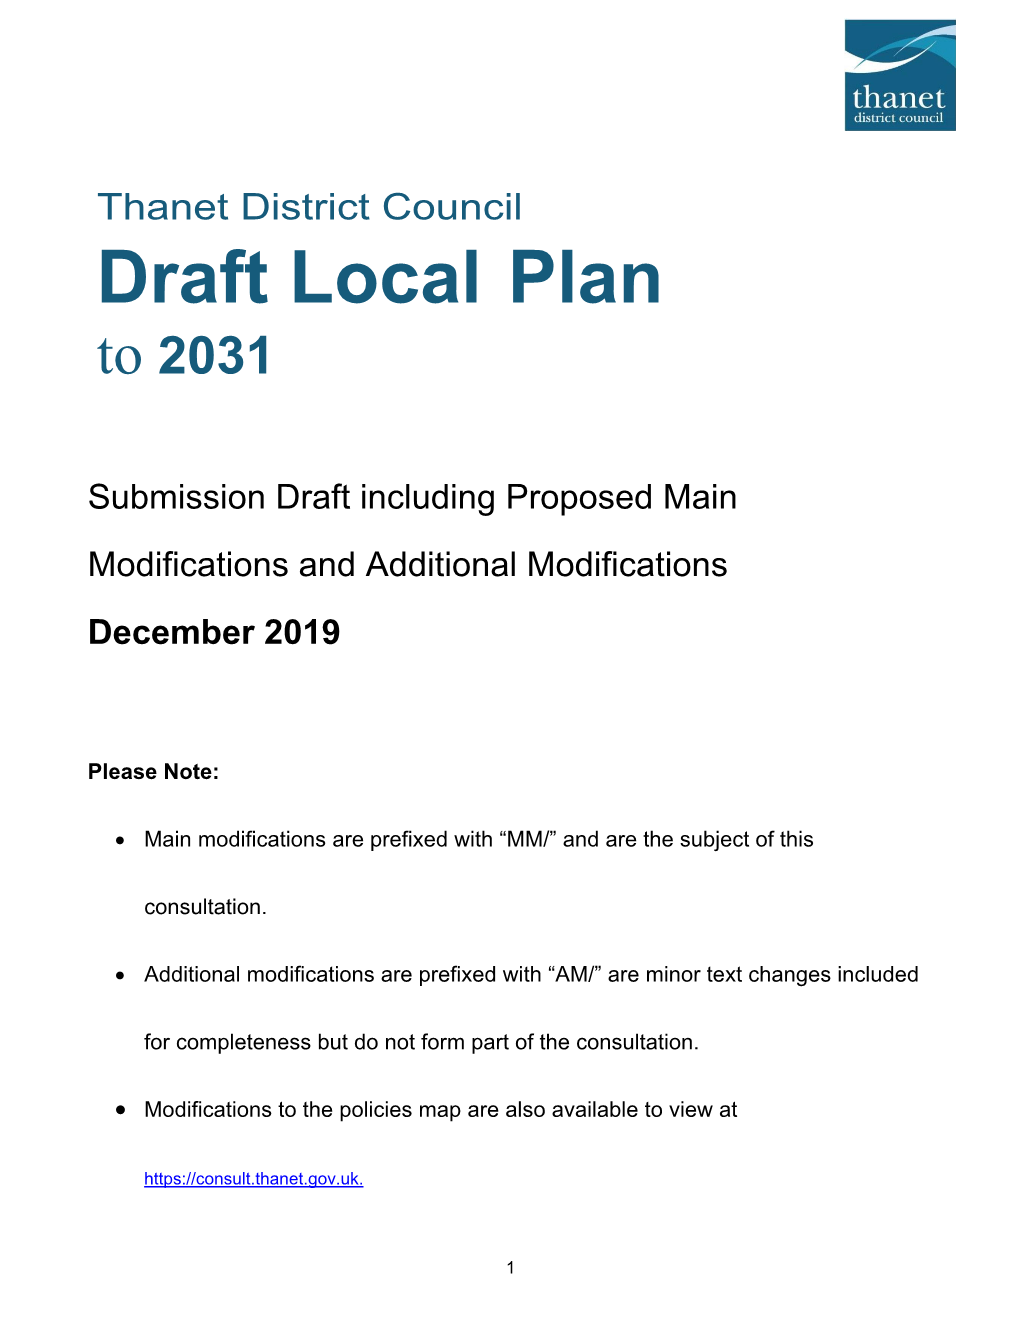 Draft Local Plan to 2031